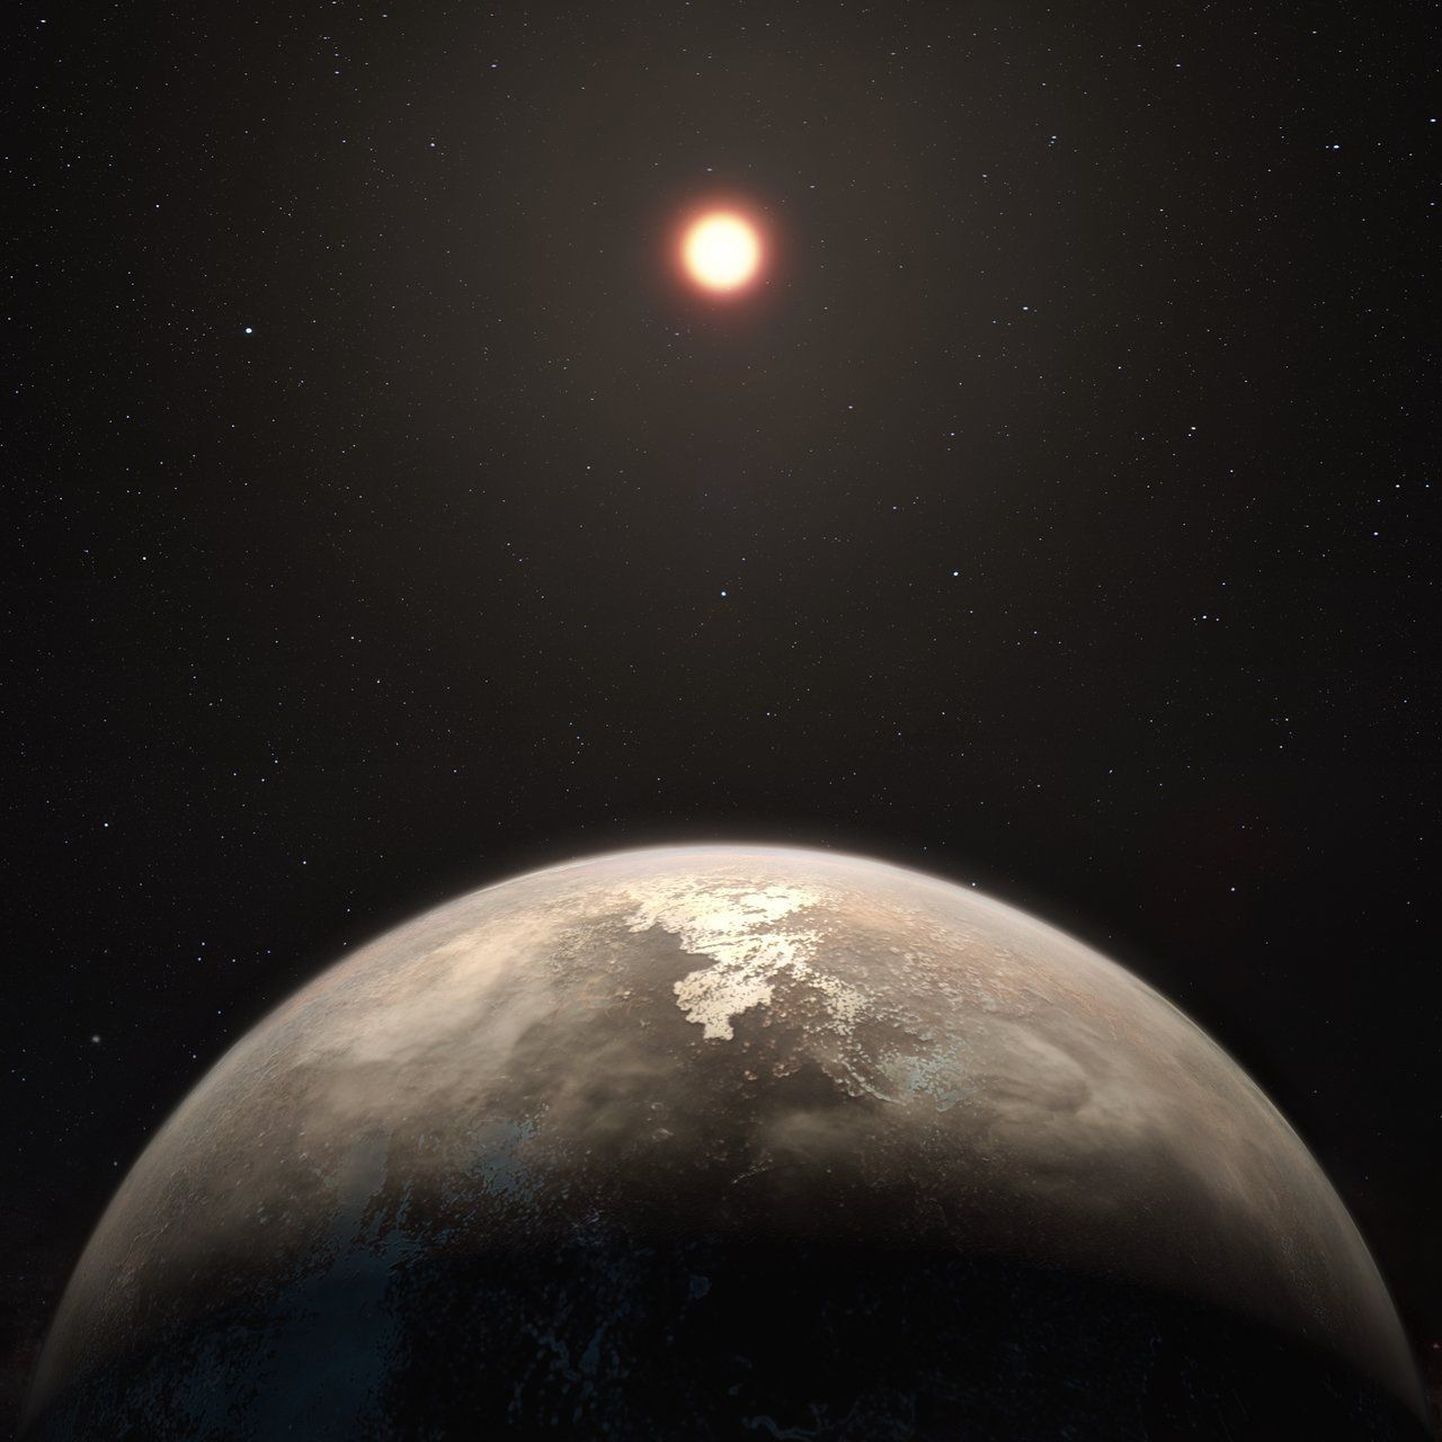 Kunstniku nägemus Ross 128b eksoplaneedist.